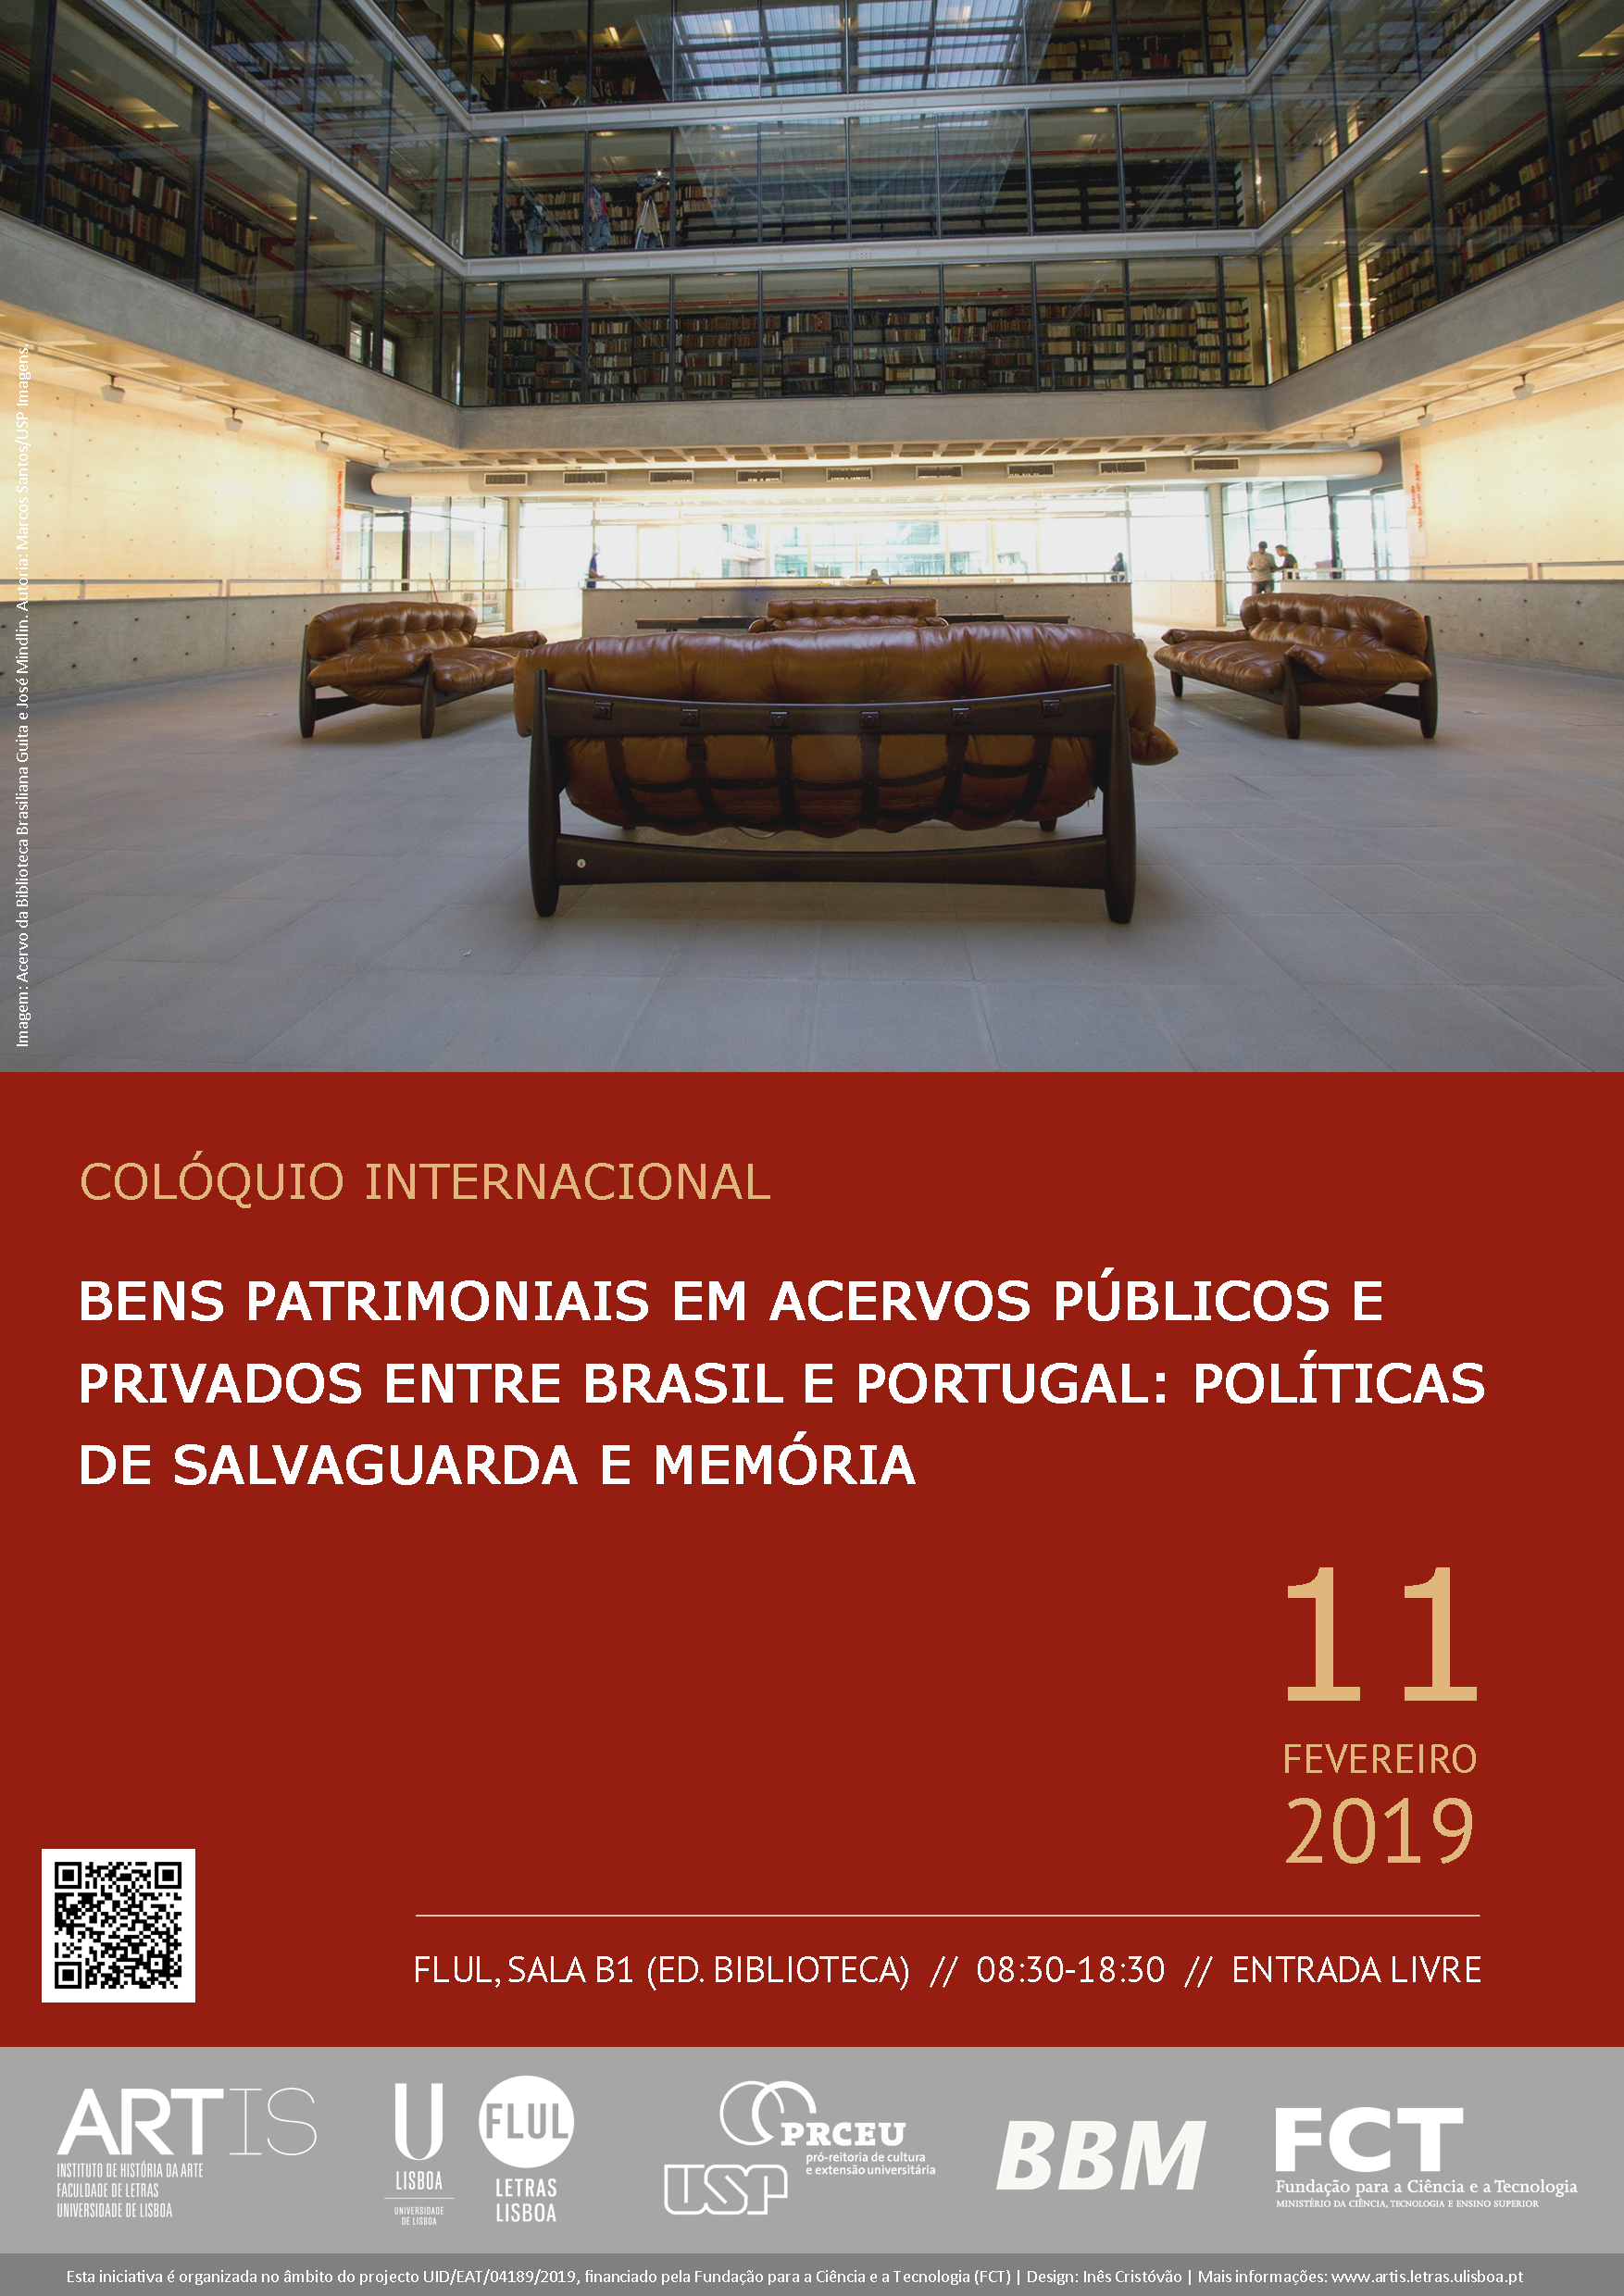 Colóquio Internacional sobre Bens Patrimoniais em Acervos Públicos e Privados, entre Brasil e Portugal: políticas de salvaguarda e memória